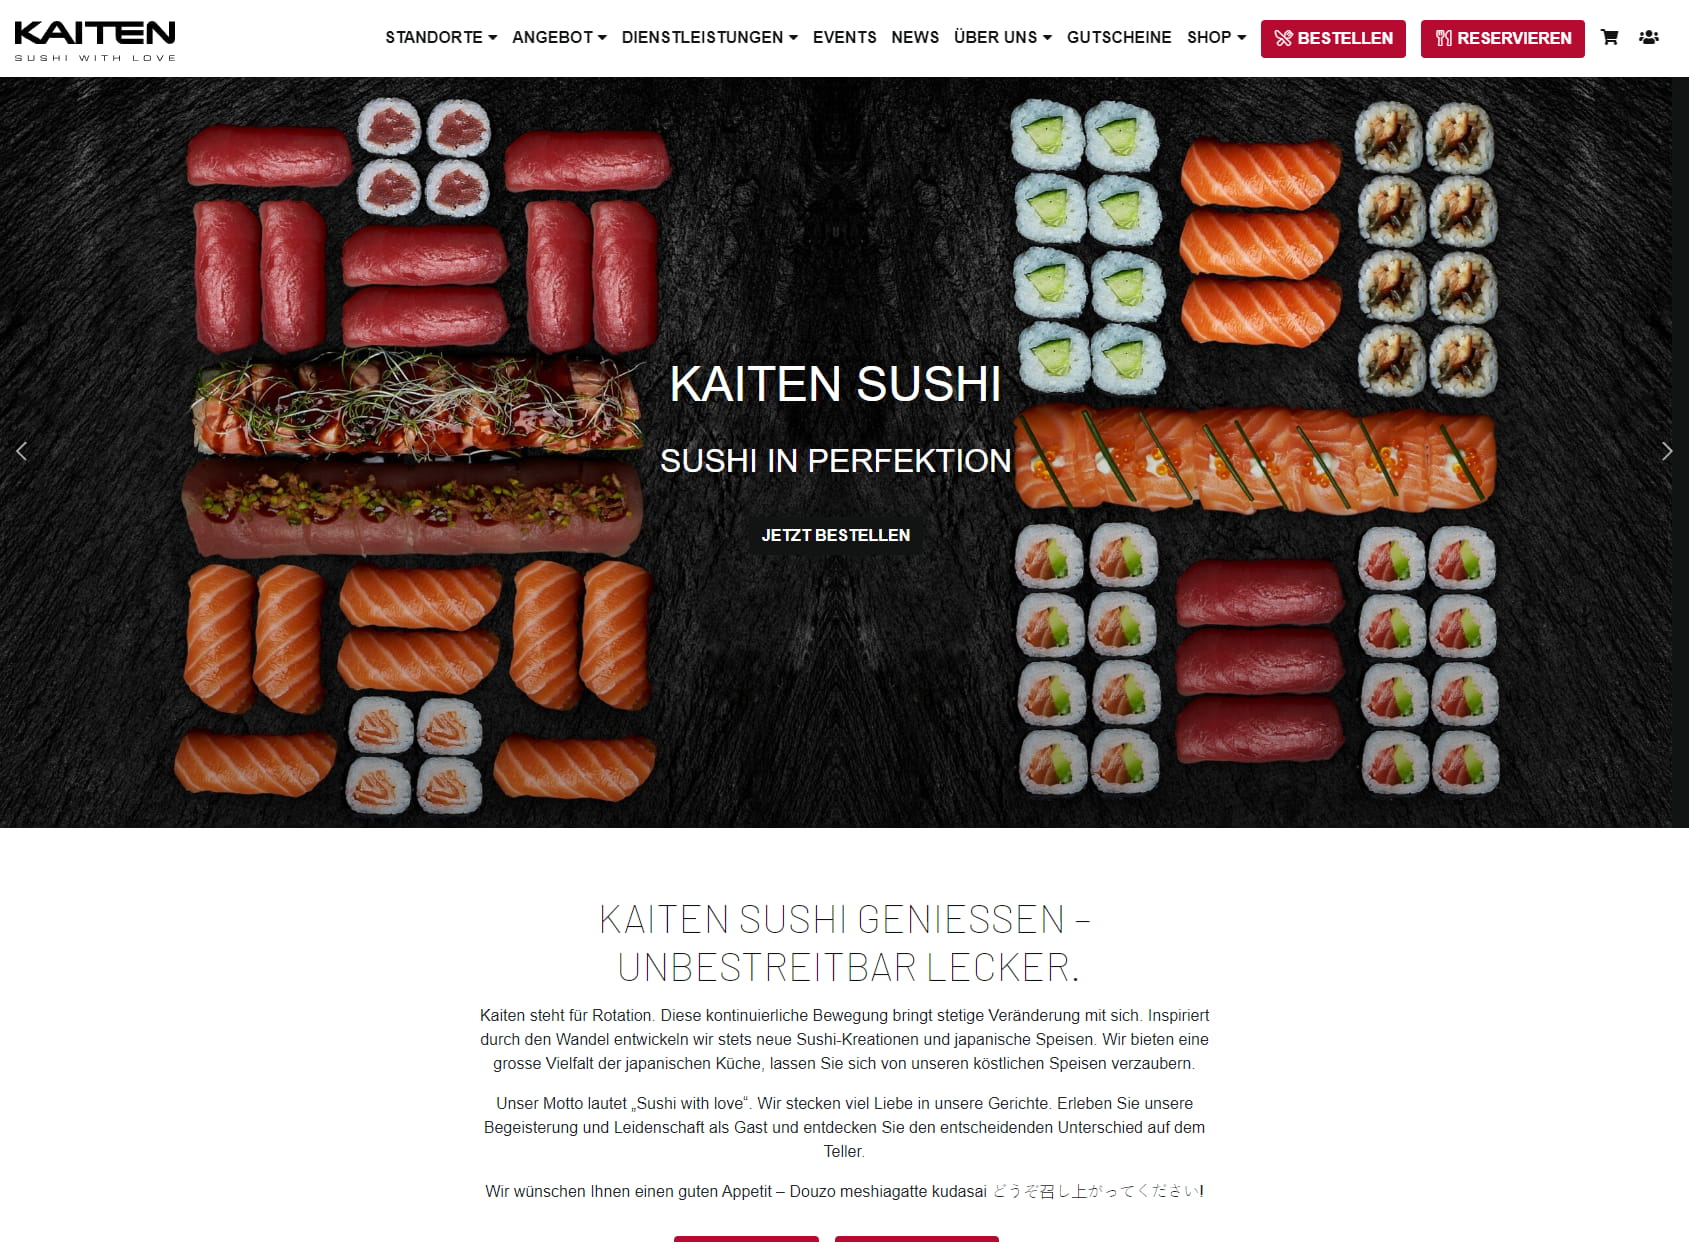 Kaiten Sushi AG, Restaurant & Takeaway